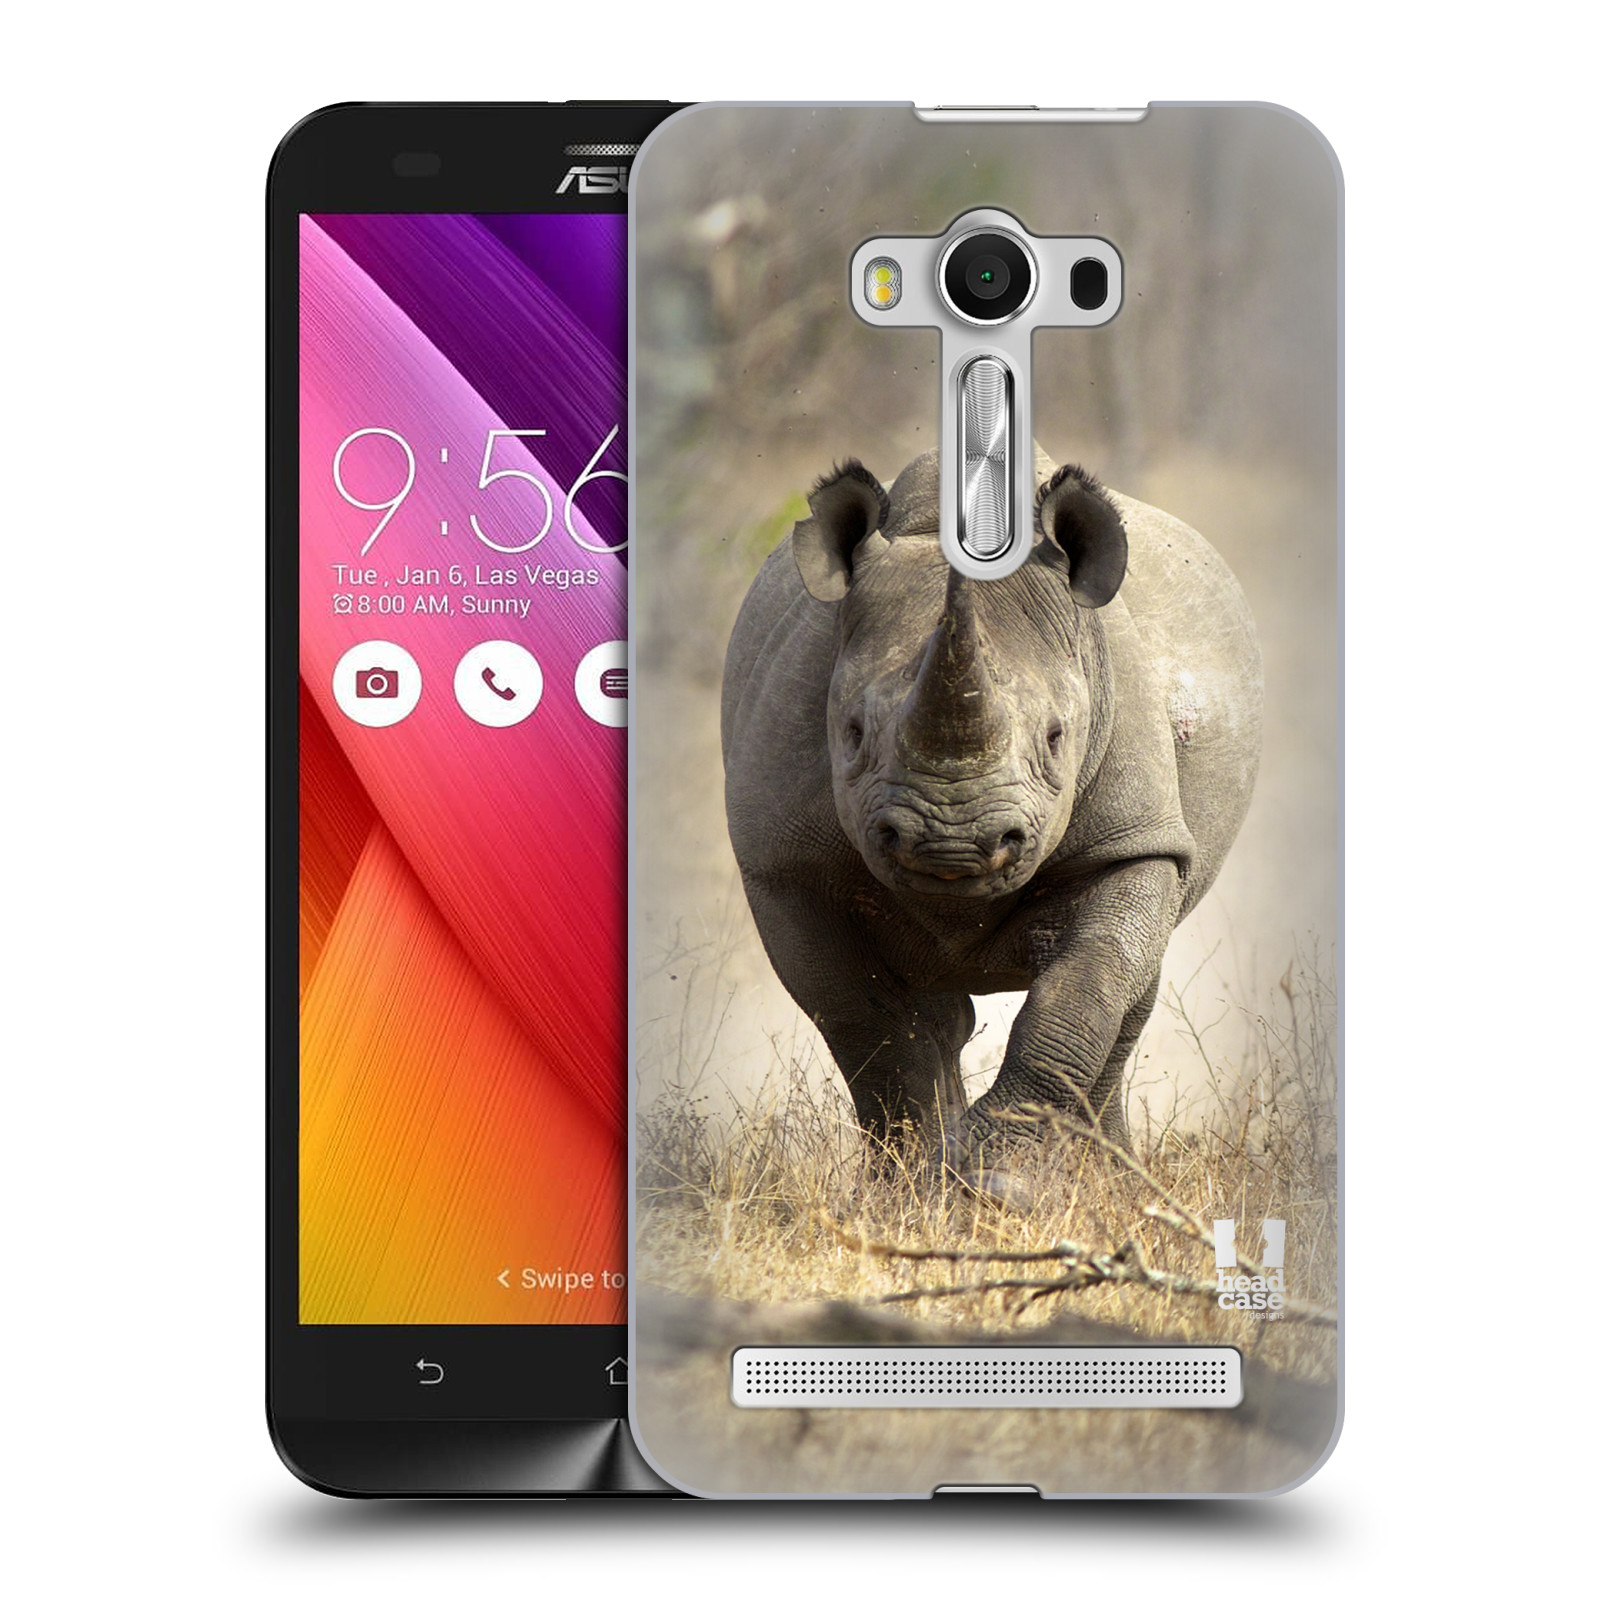 HEAD CASE plastový obal na mobil Asus Zenfone 2 LASER (5,5 displej ZE550KL) vzor Divočina, Divoký život a zvířata foto AFRIKA BĚŽÍCÍ NOSOROŽEC